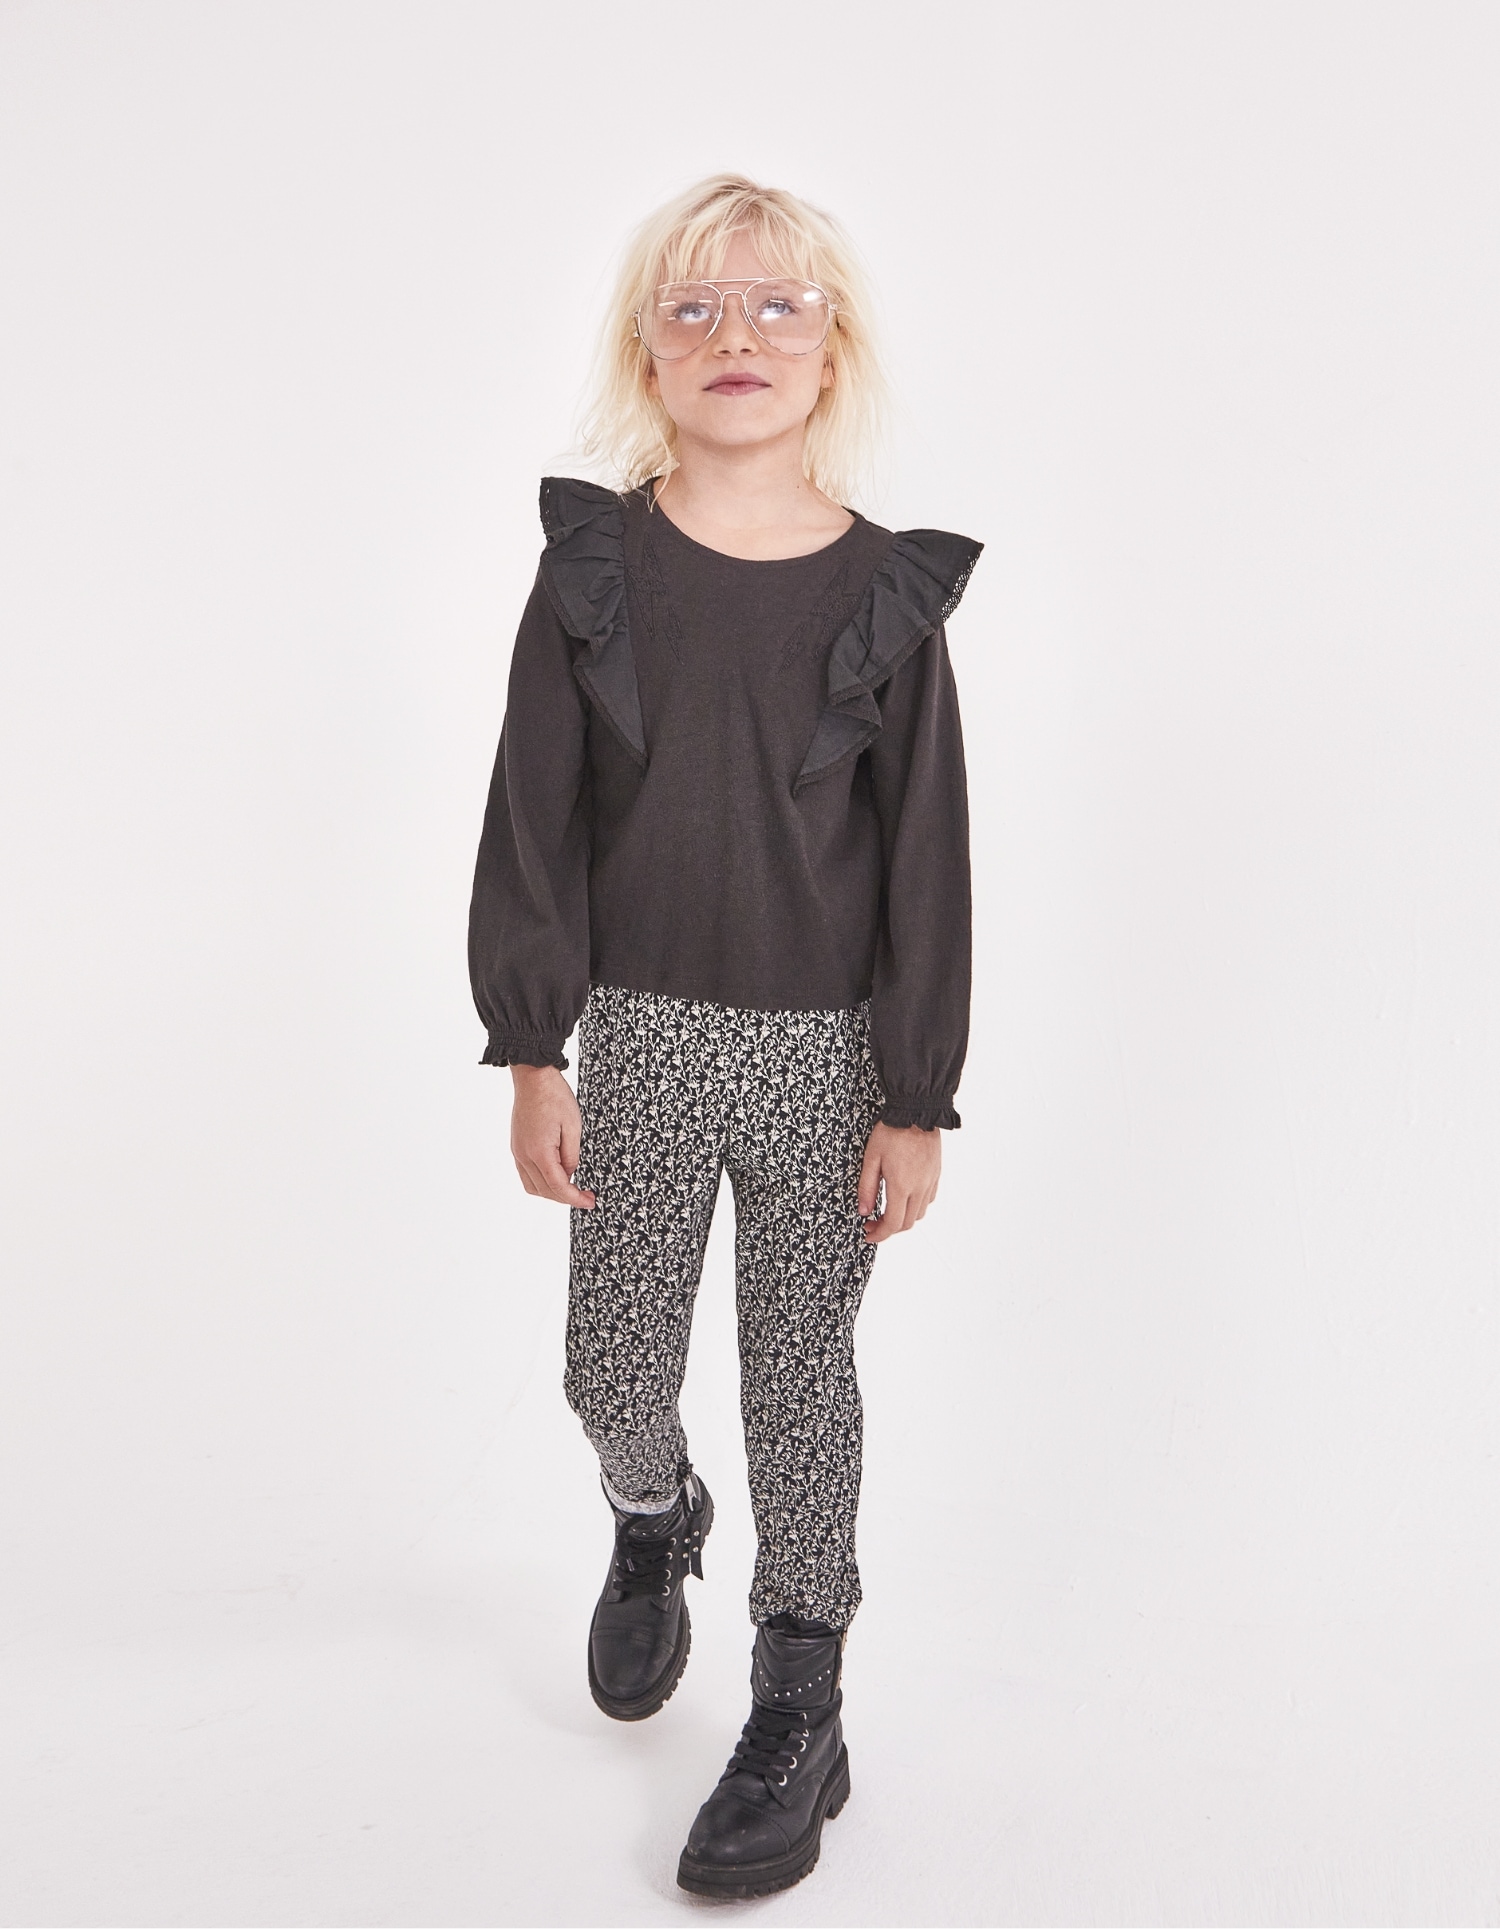 Lockere schwarze Mädchenhose aus Ecovero® mit Lilien-Print